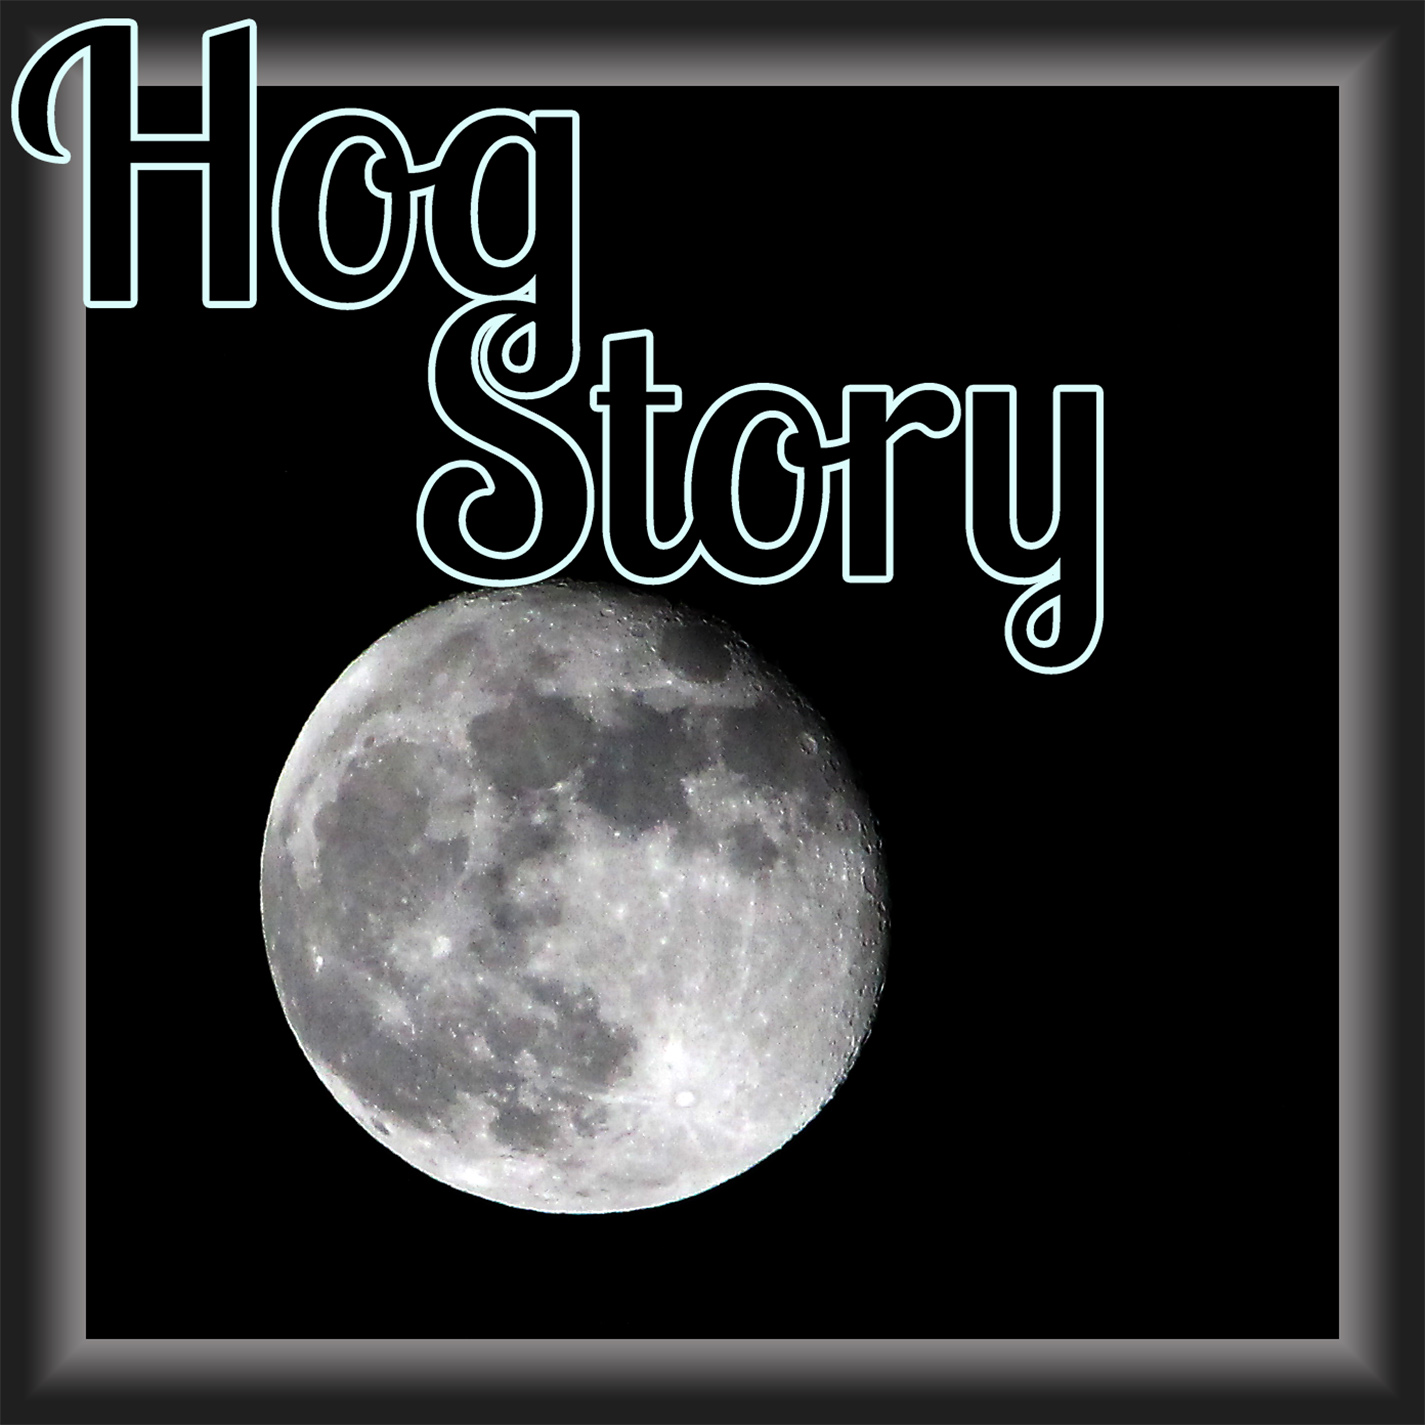 Hog Story